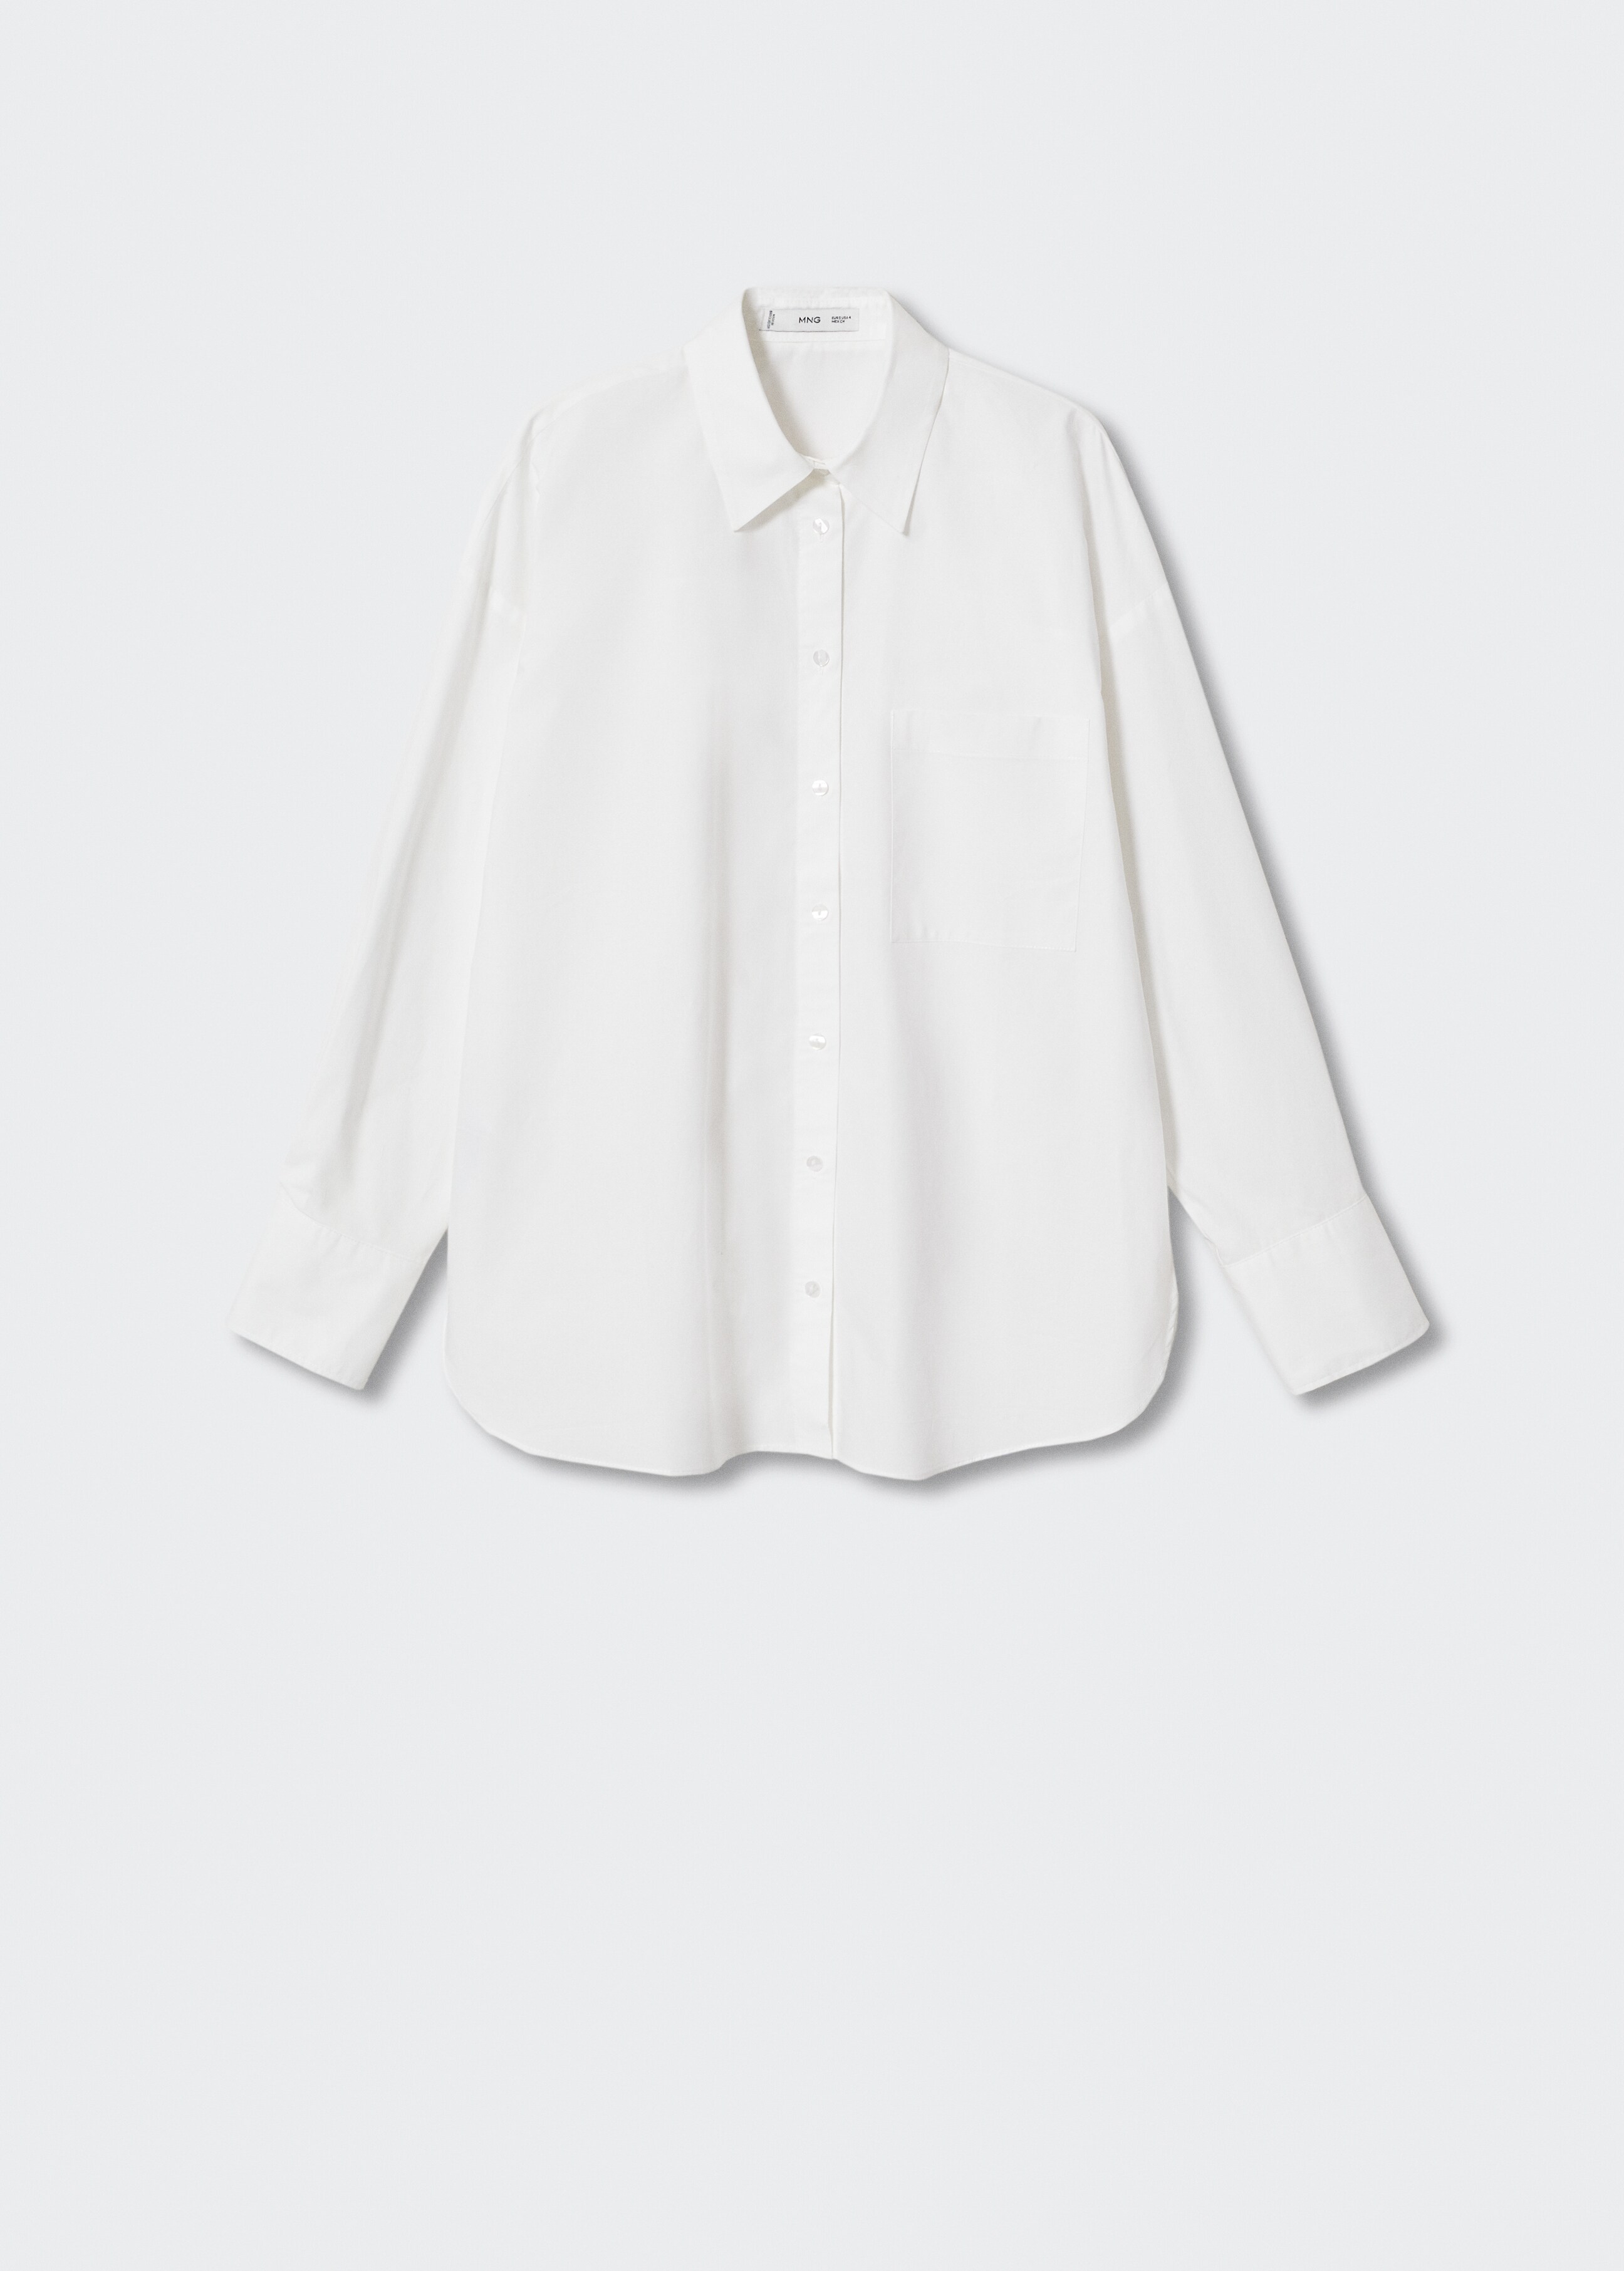 Camisa de algodão regular fit - Artigo sem modelo